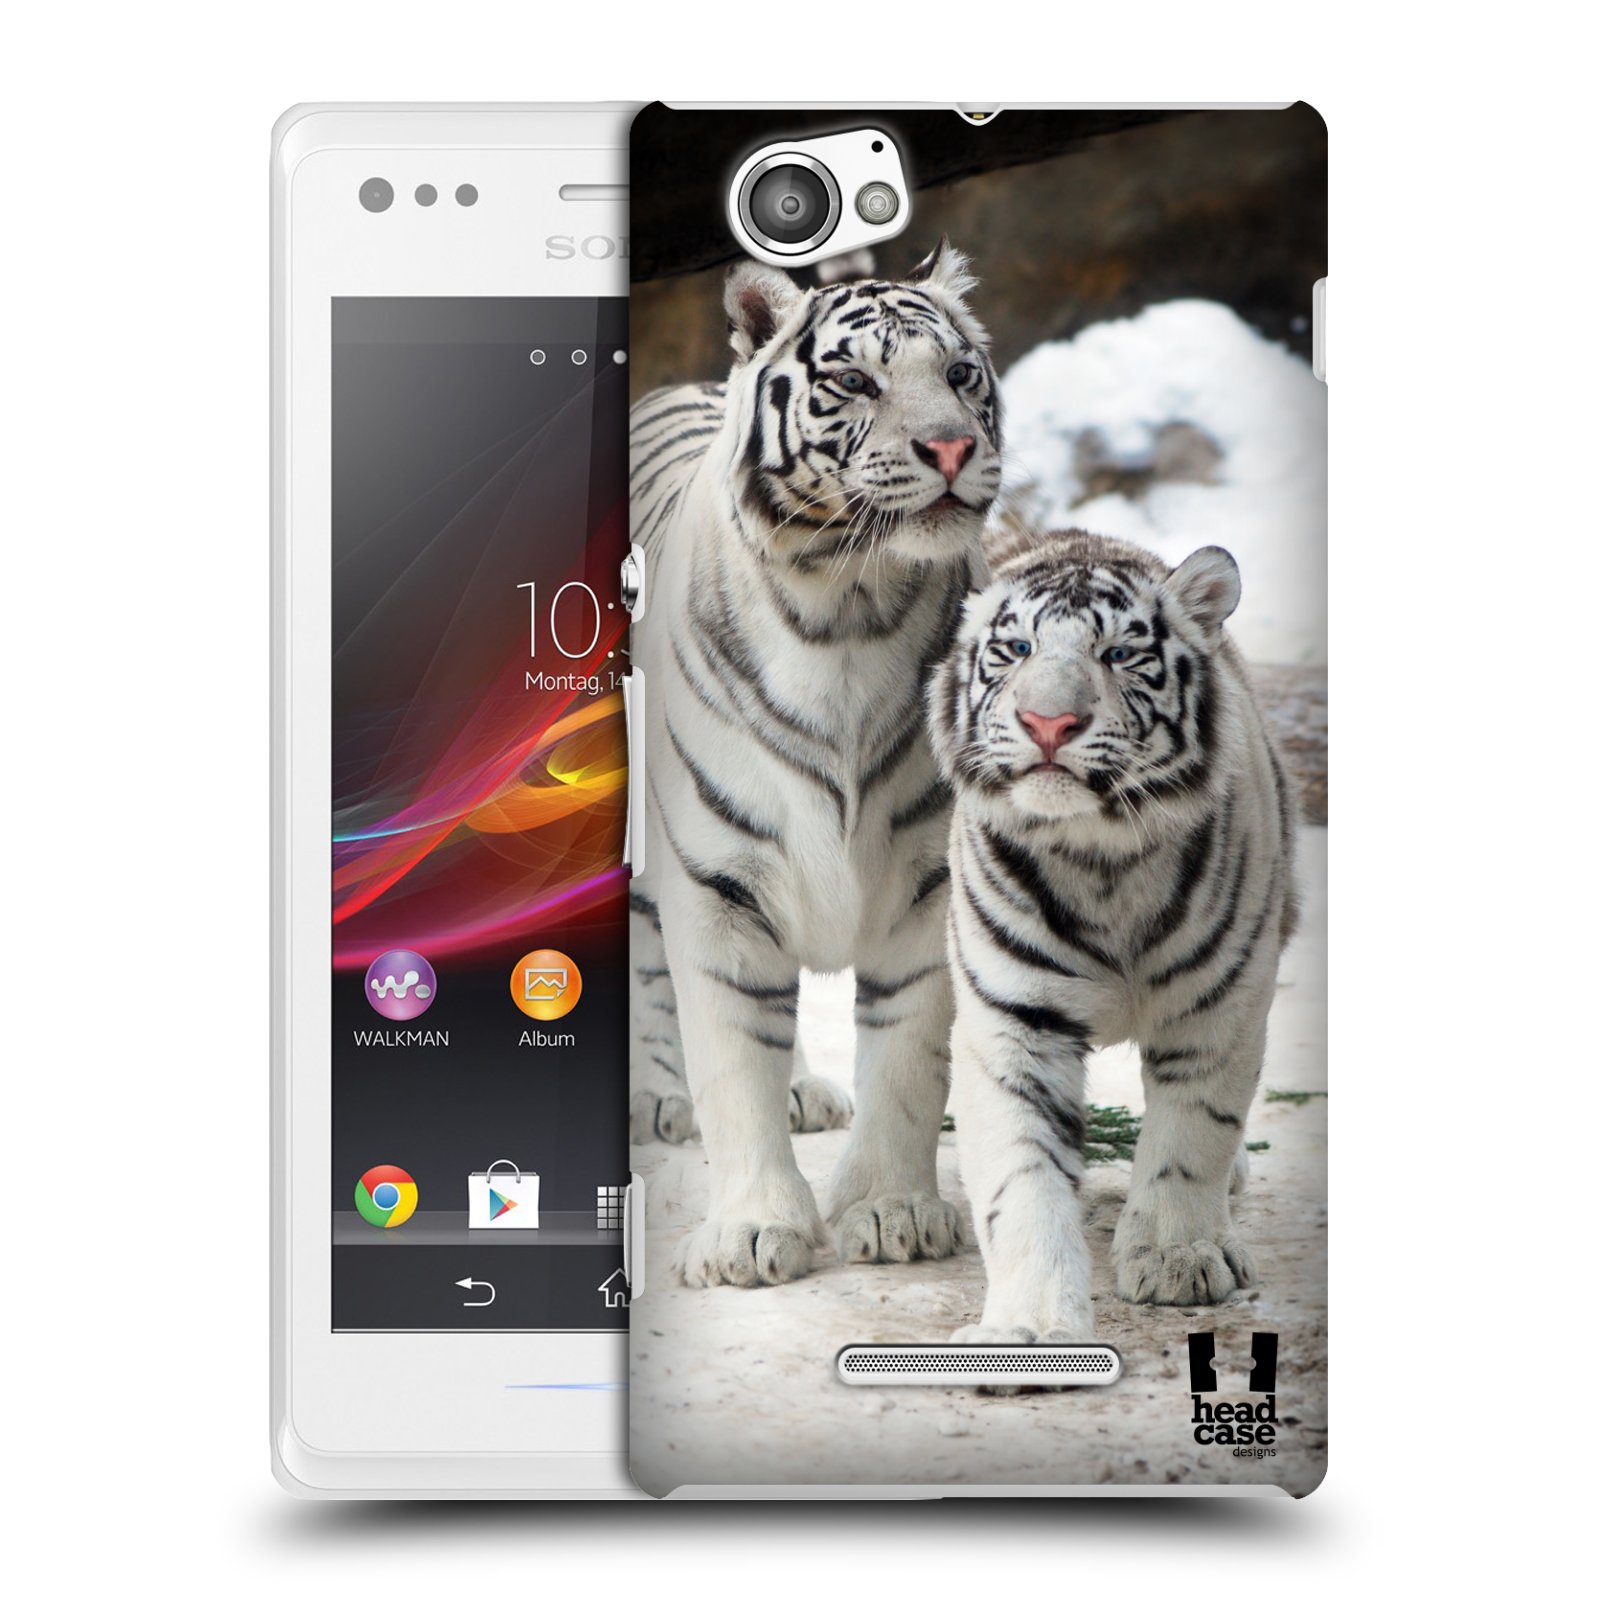 HEAD CASE plastový obal na mobil Sony Xperia M vzor slavná zvířata foto dva bílí tygři